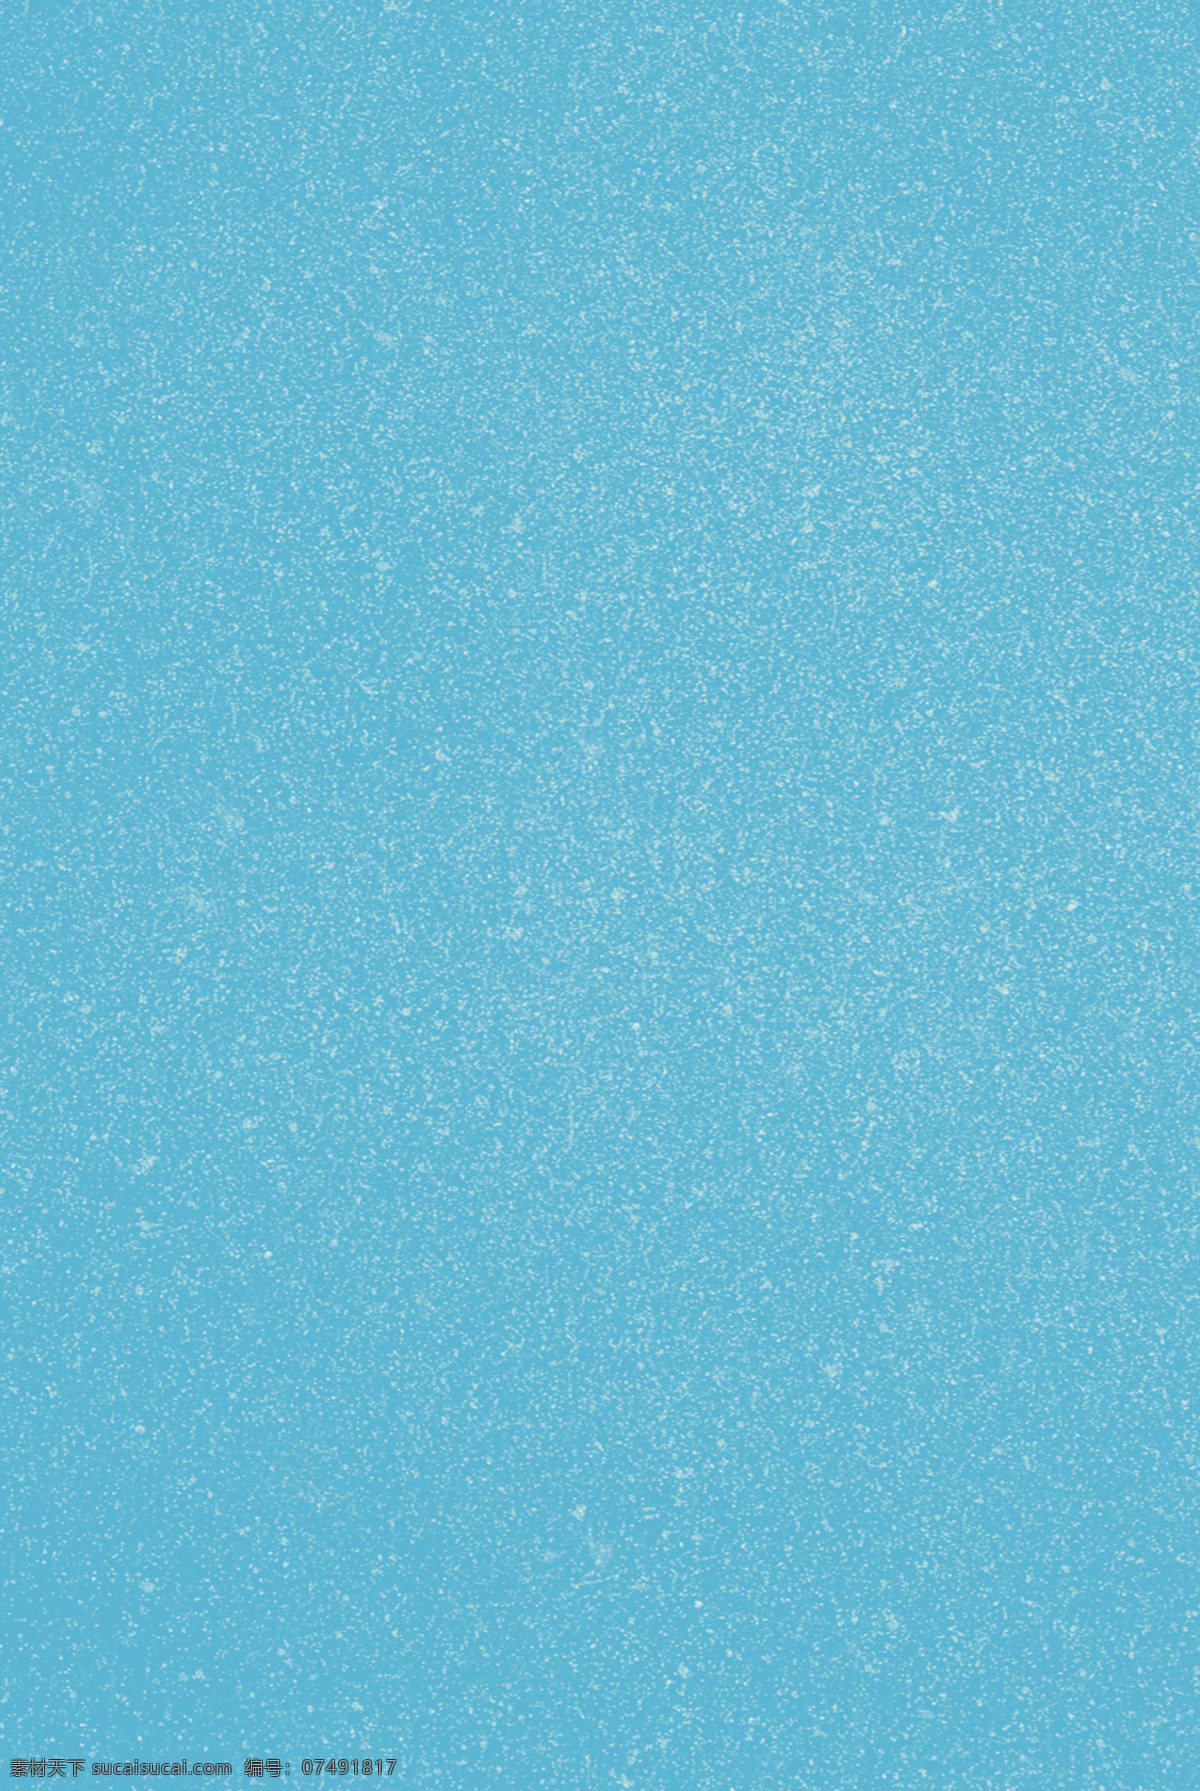 蓝色 磨砂 质感 颗粒 感 背景 蓝色背景 颗粒感 创意 高清 简单 简约 大气 清新 海报 设计素材 分层 背景素材